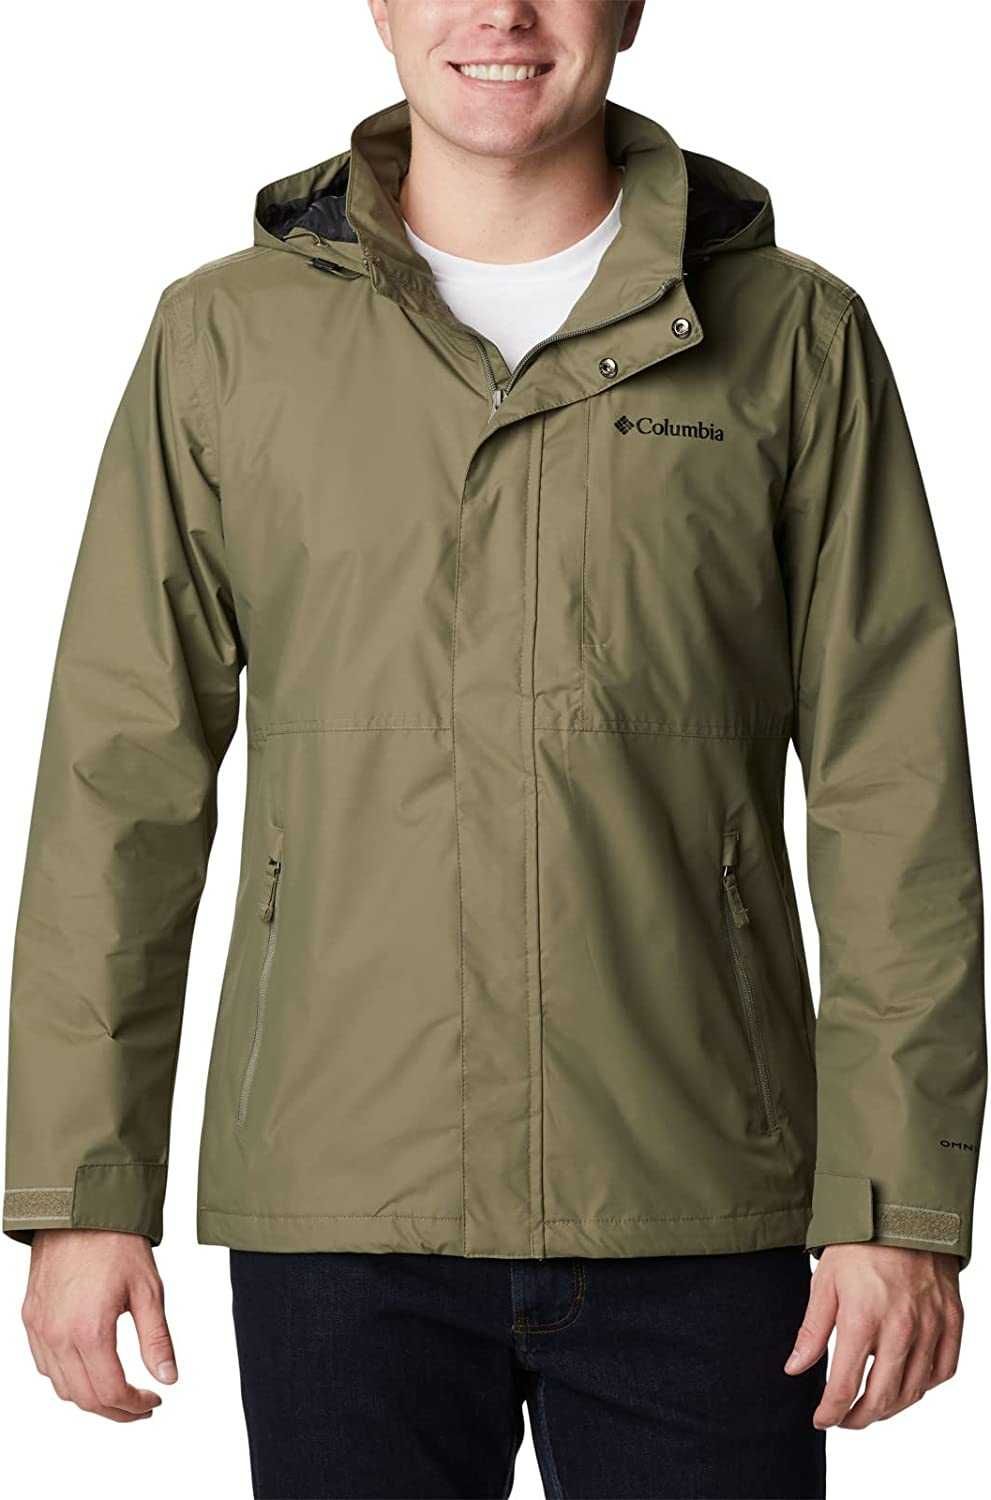 Чоловіча куртка - вітрівка Columbia Crest Cloud jacket